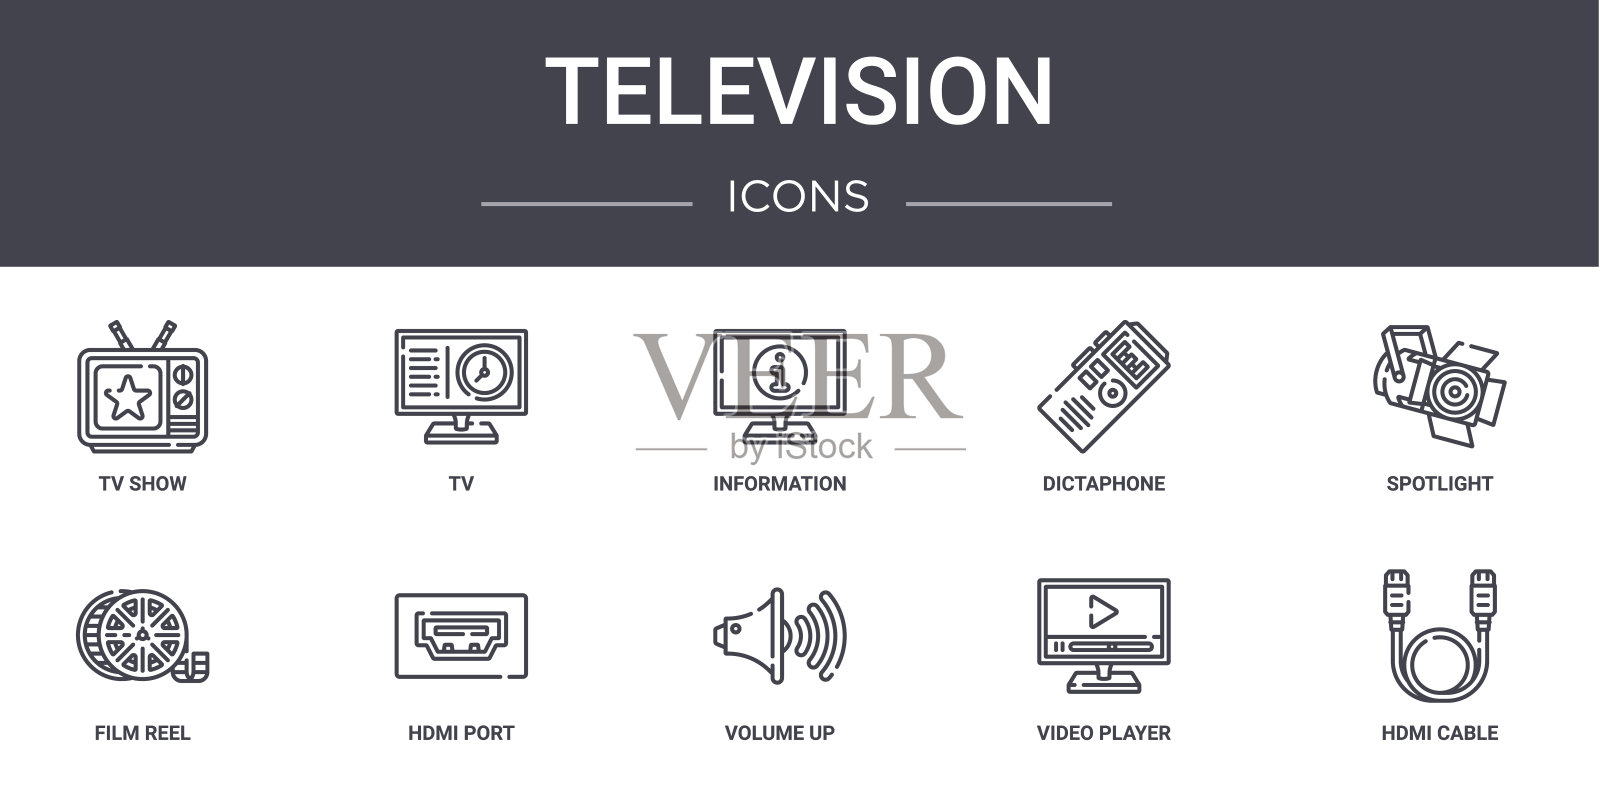 电视概念线图标集。包含图标，可用于web，标志，ui/ux，如电视，口述电话，电影卷轴，音量，视频播放器，hdmi电缆，聚光灯，信息图标素材